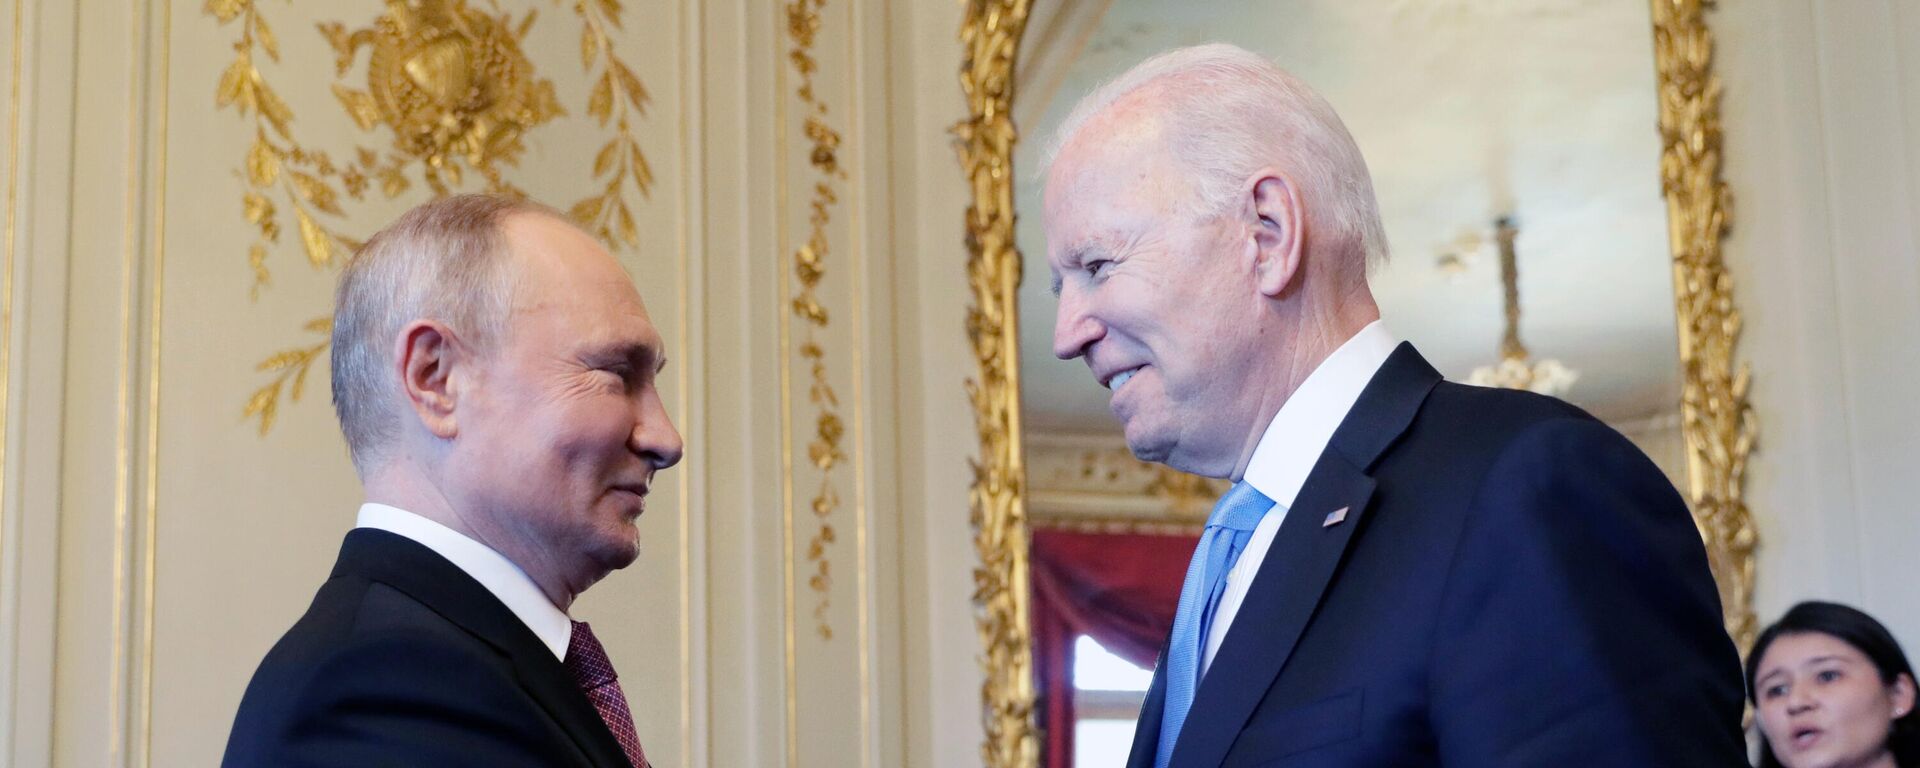 Vladímir Putin, presidente de Rusia, y Joe Biden, presidente de EEUU - Sputnik Mundo, 1920, 17.06.2021